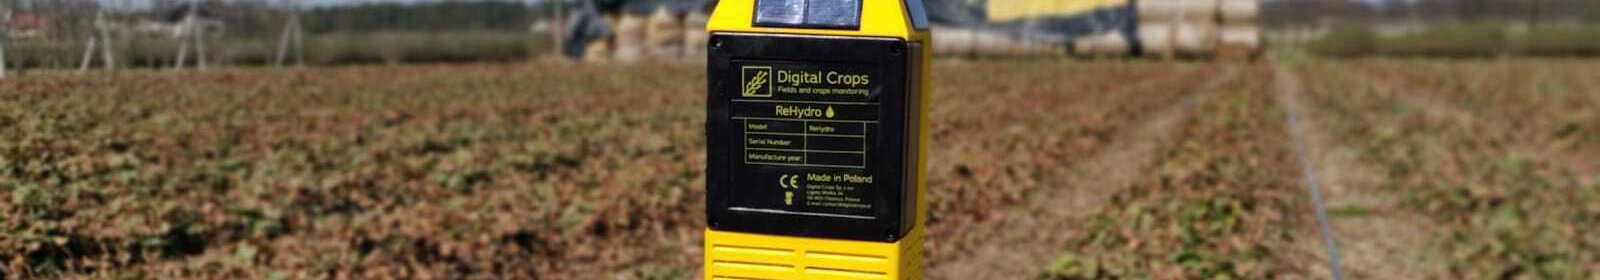 Digital Crops sensor on a farm